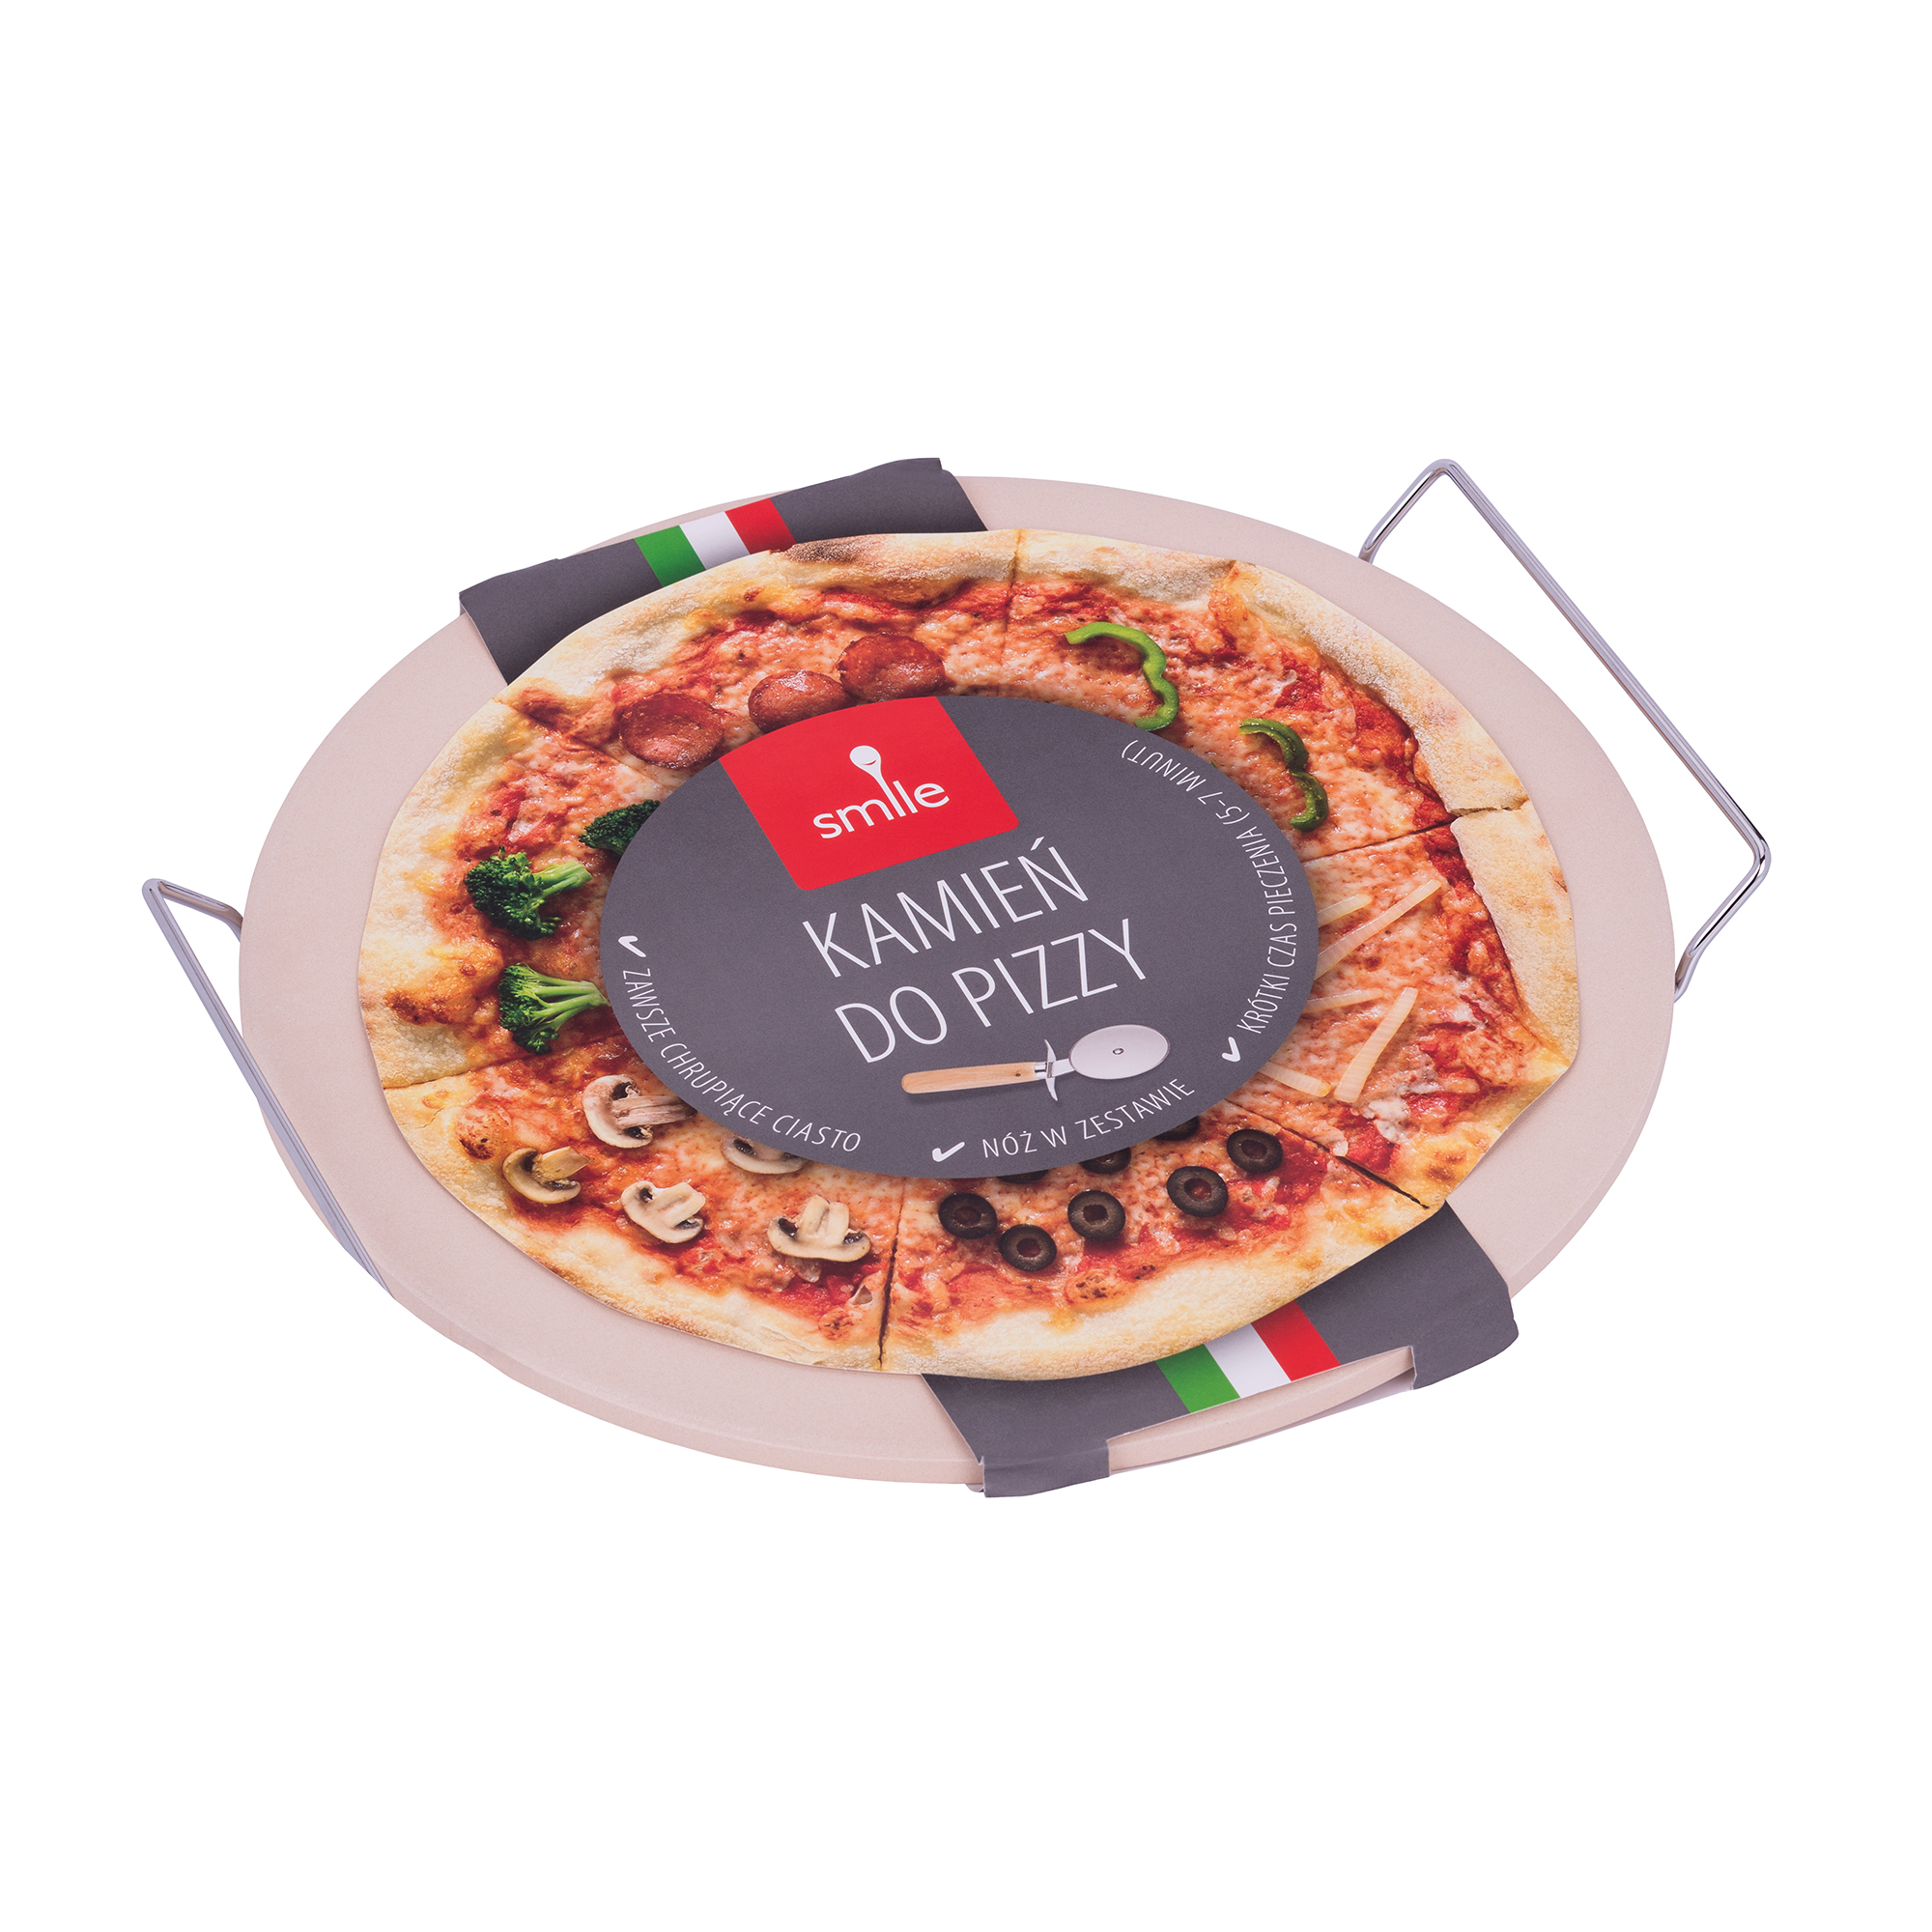 Smile SKP-1 Piedra para hornear Pizza, pan, bollería, piedra cerámica de 33cm diametro, Soporte de Metal, cortador pizza.